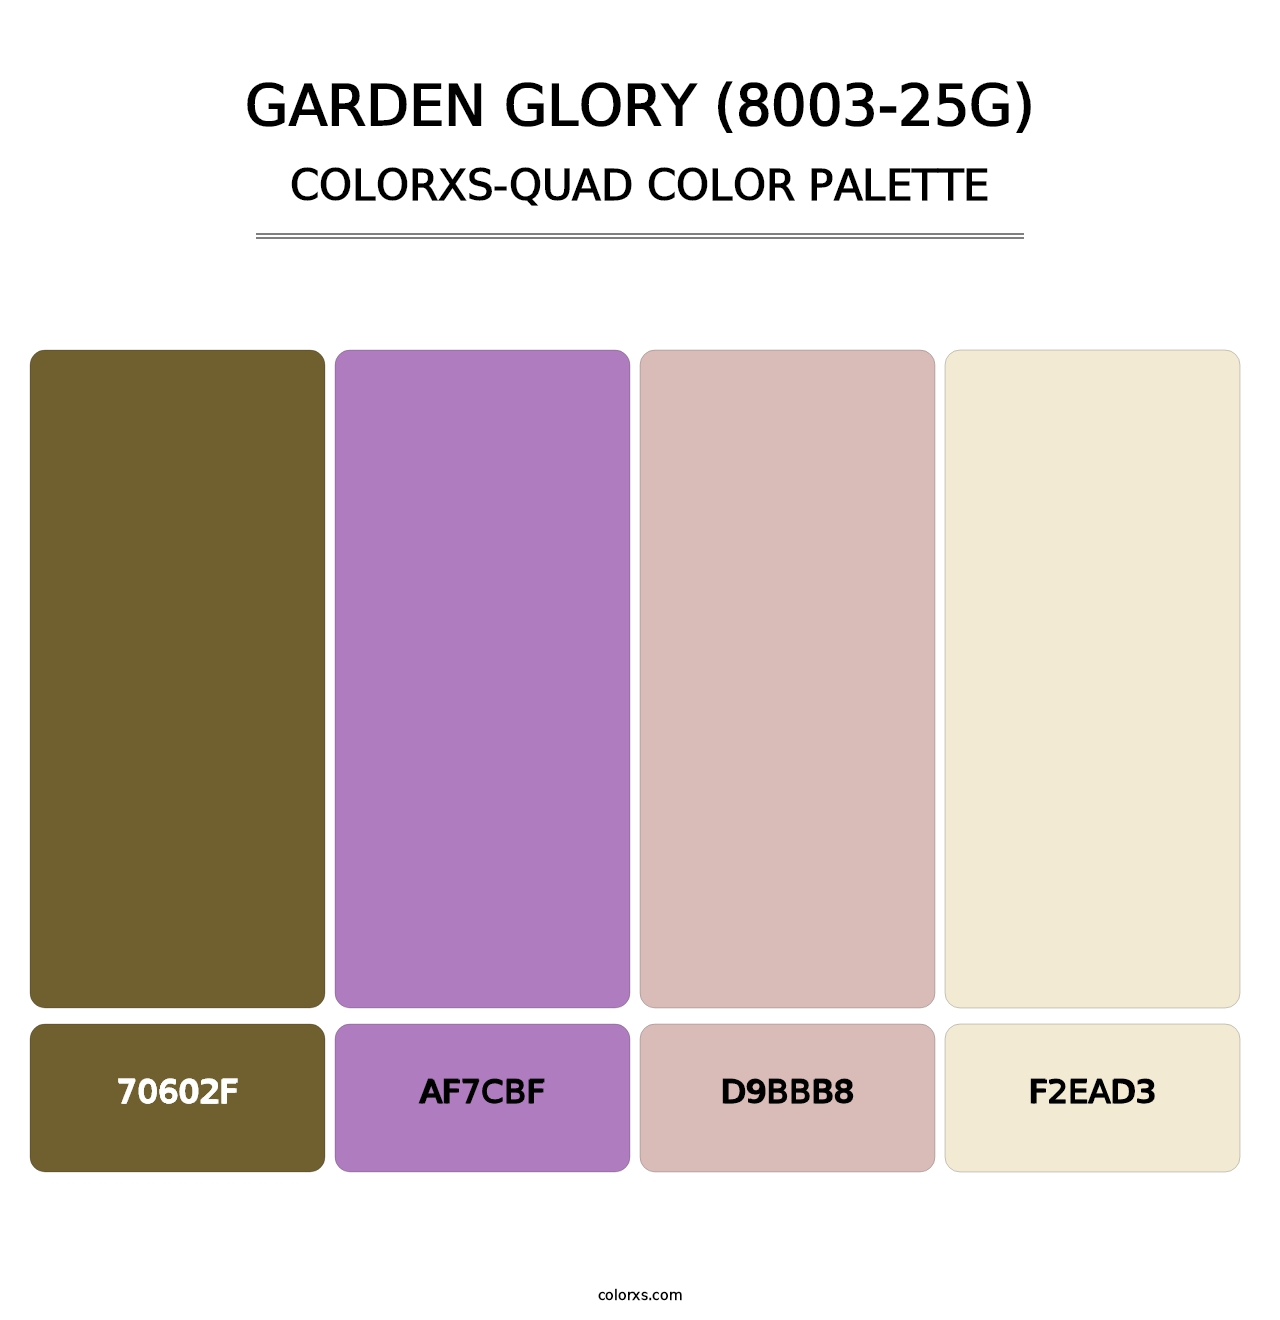 Garden Glory (8003-25G) - Colorxs Quad Palette